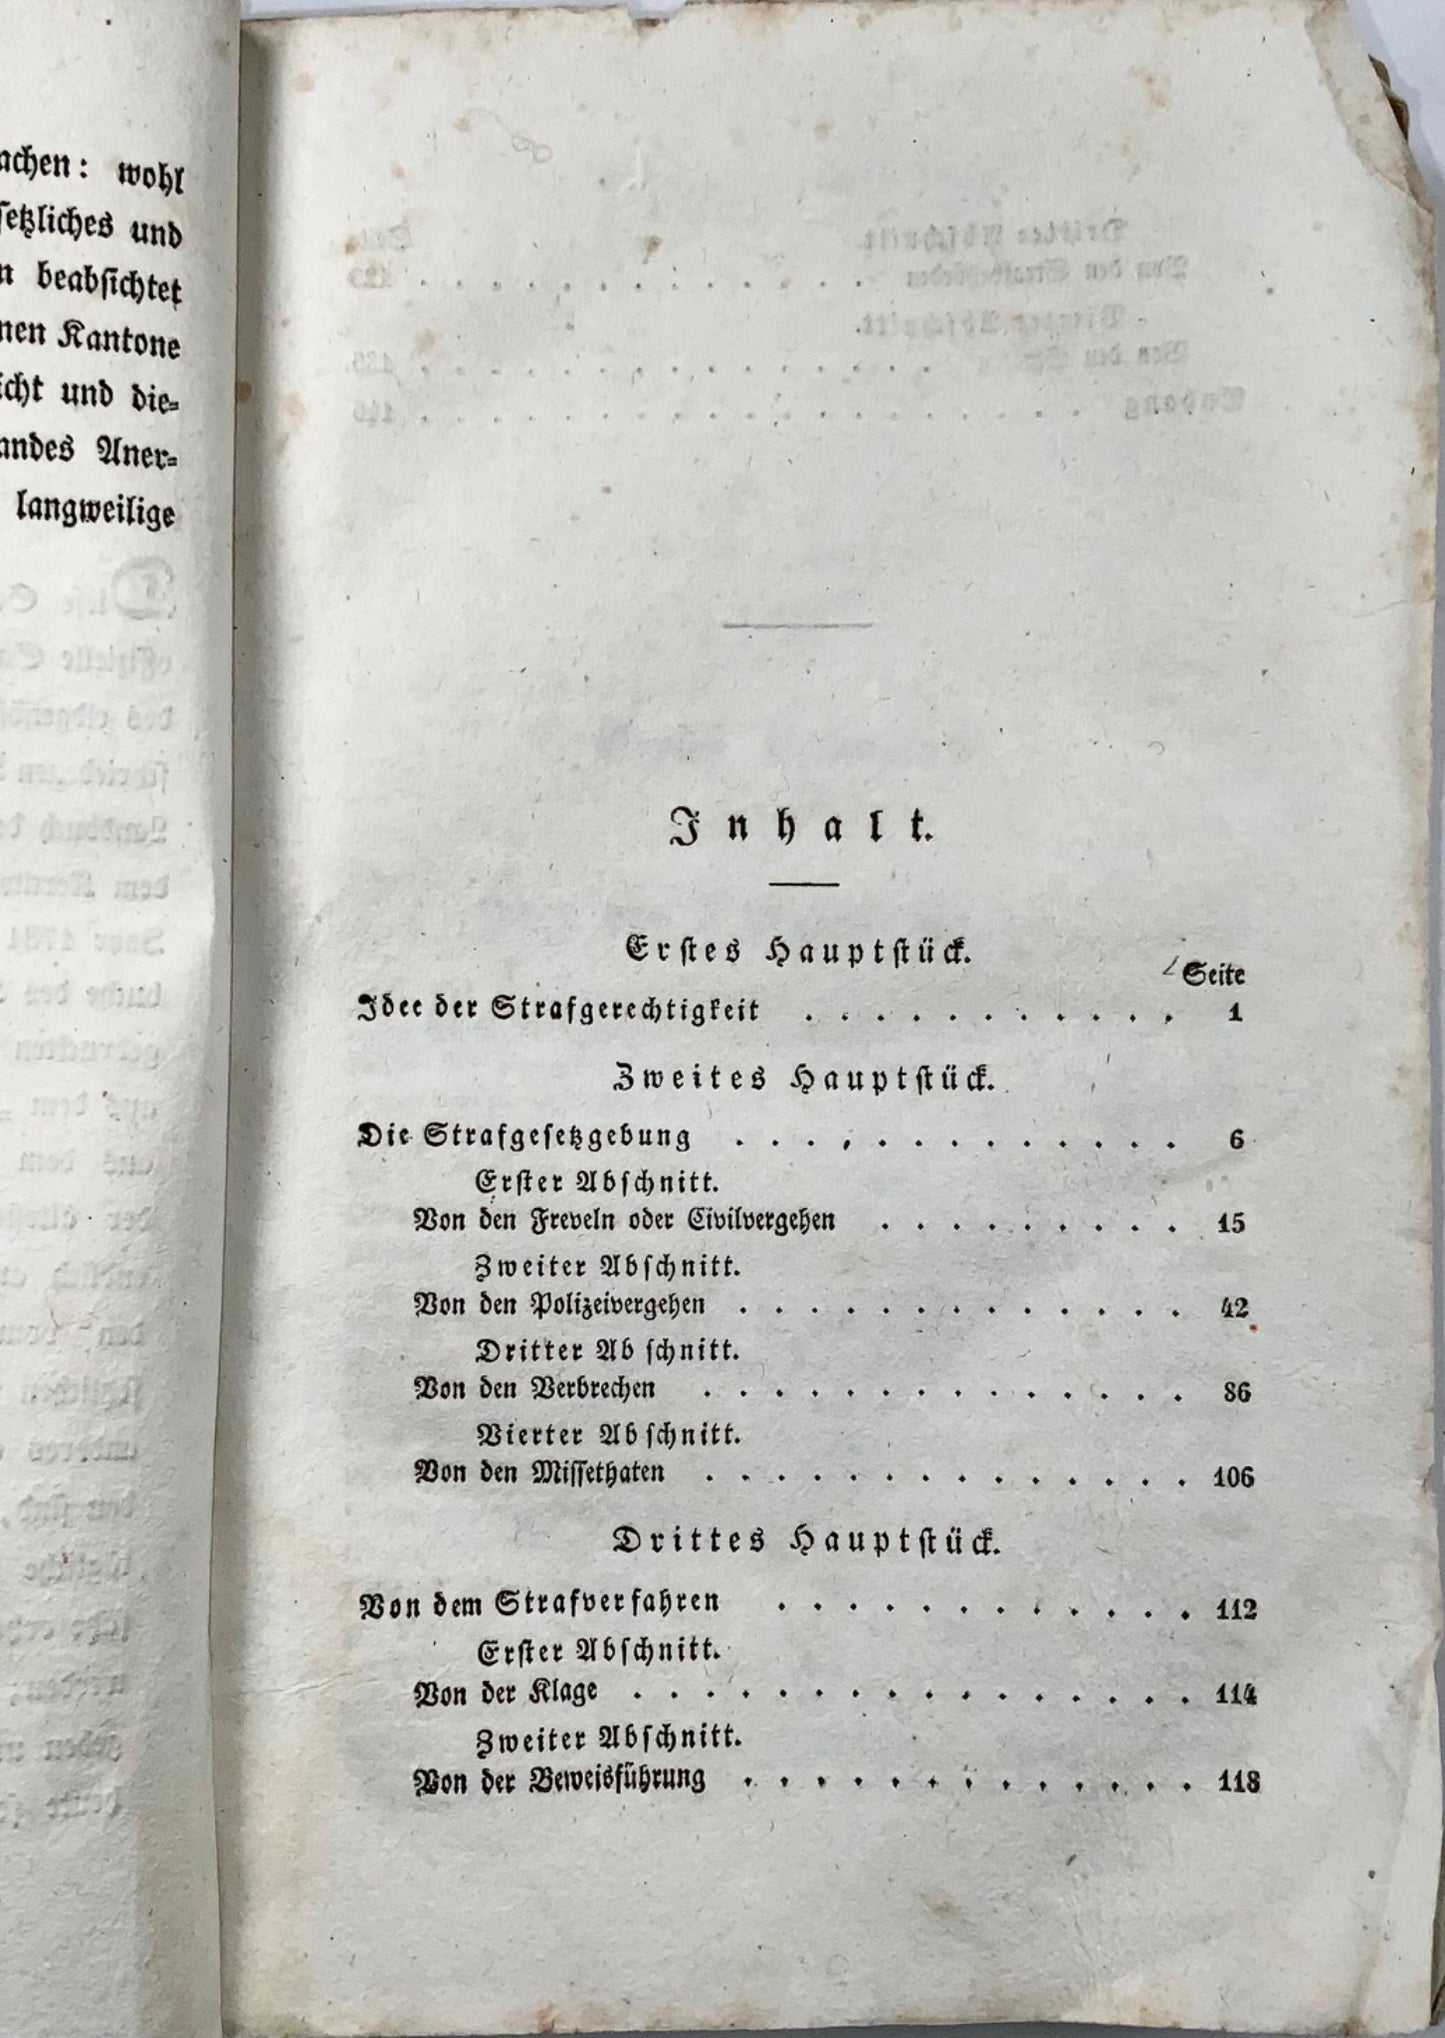 1833 Siegwart-Muller, droit pénal de la Suisse centrale, livre